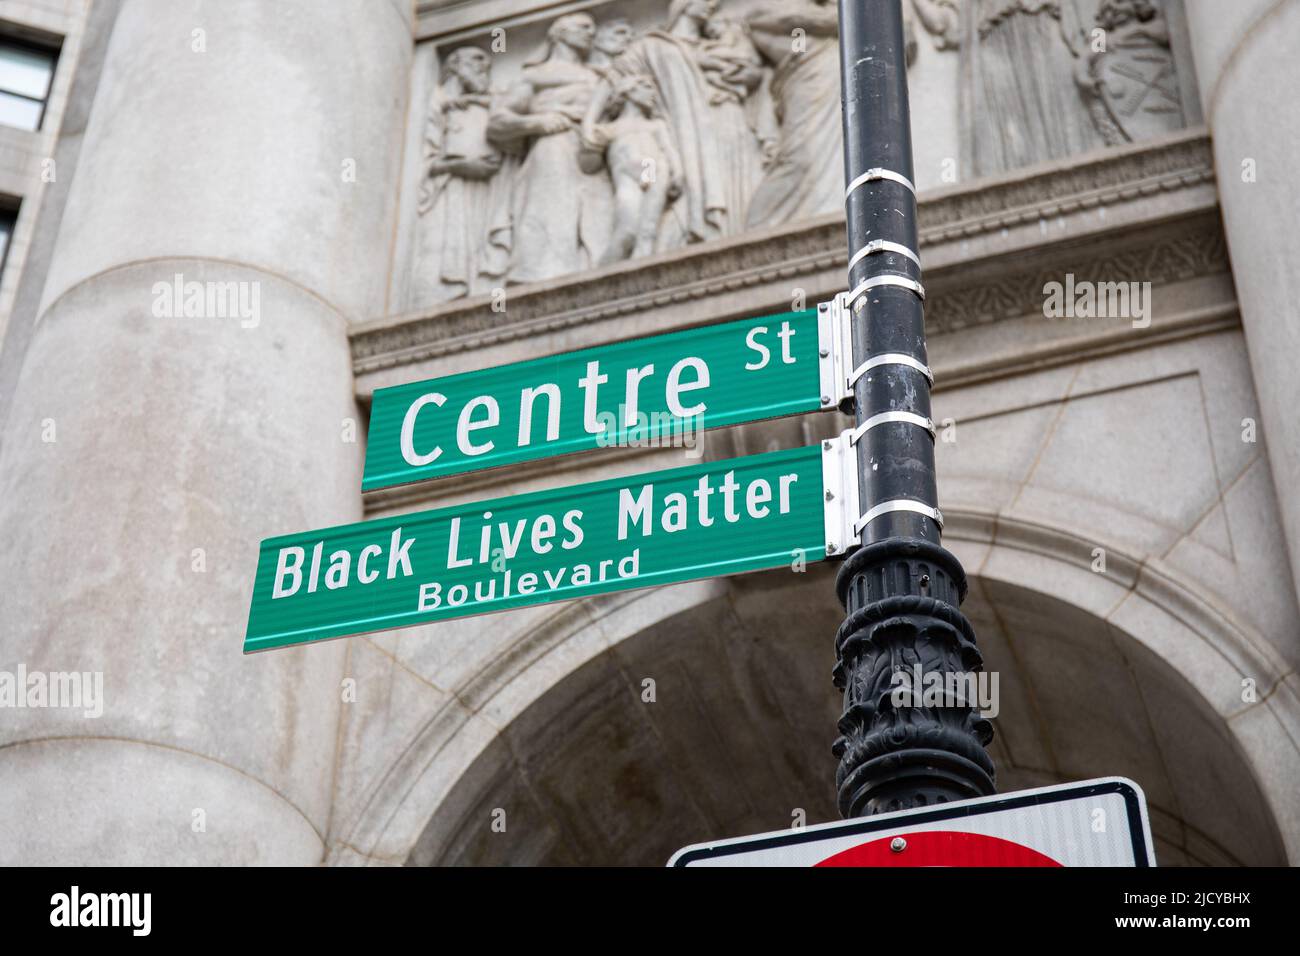 Black Lives Matter Boulevard panneau de rue à New York City, États-Unis d'Amérique Banque D'Images